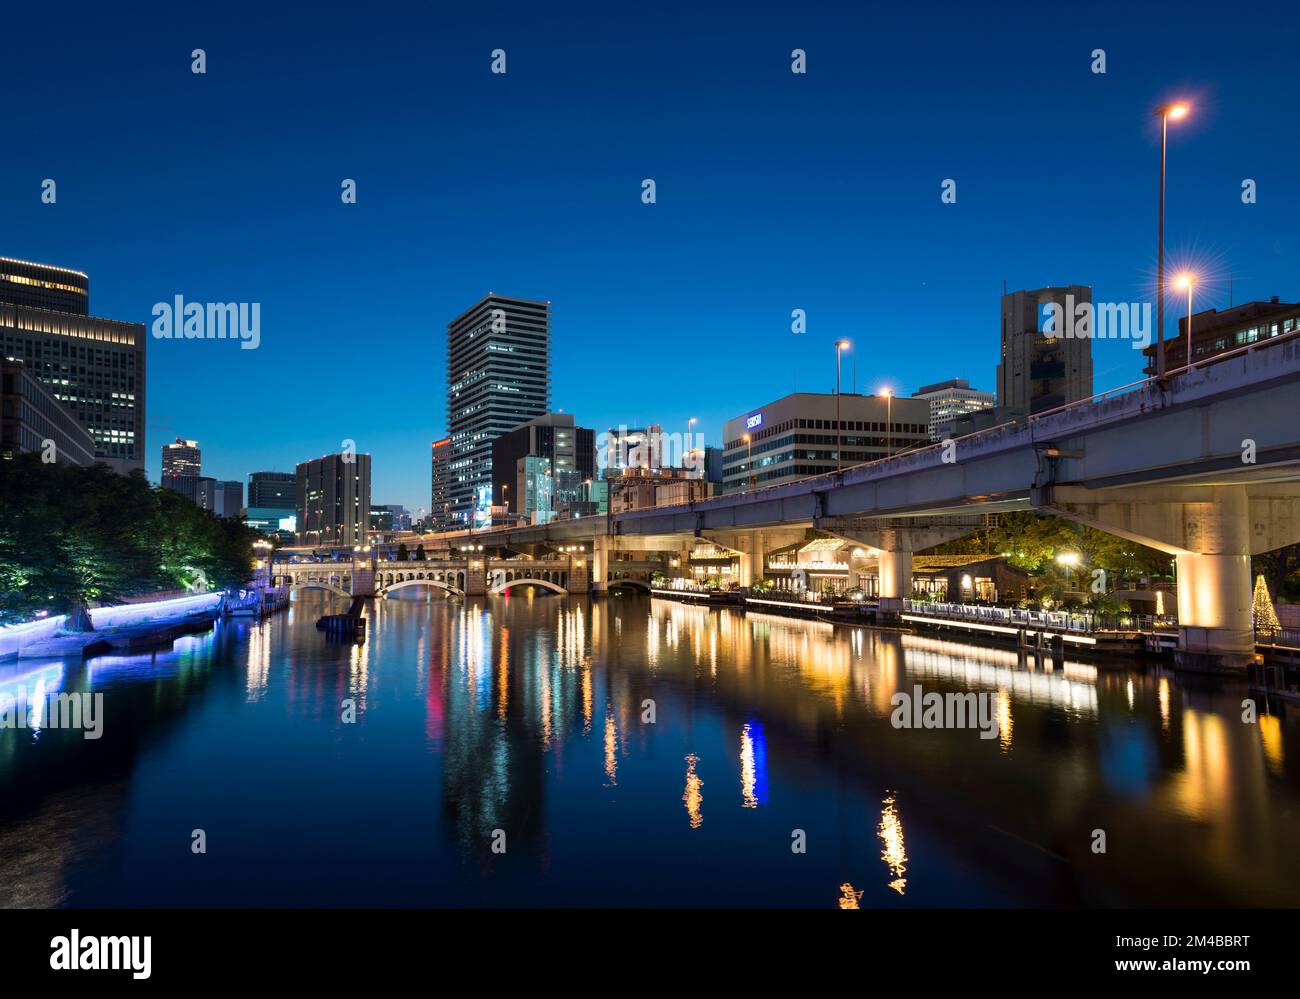 Dojimahama Vue de nuit, Osaka, Japon Banque D'Images